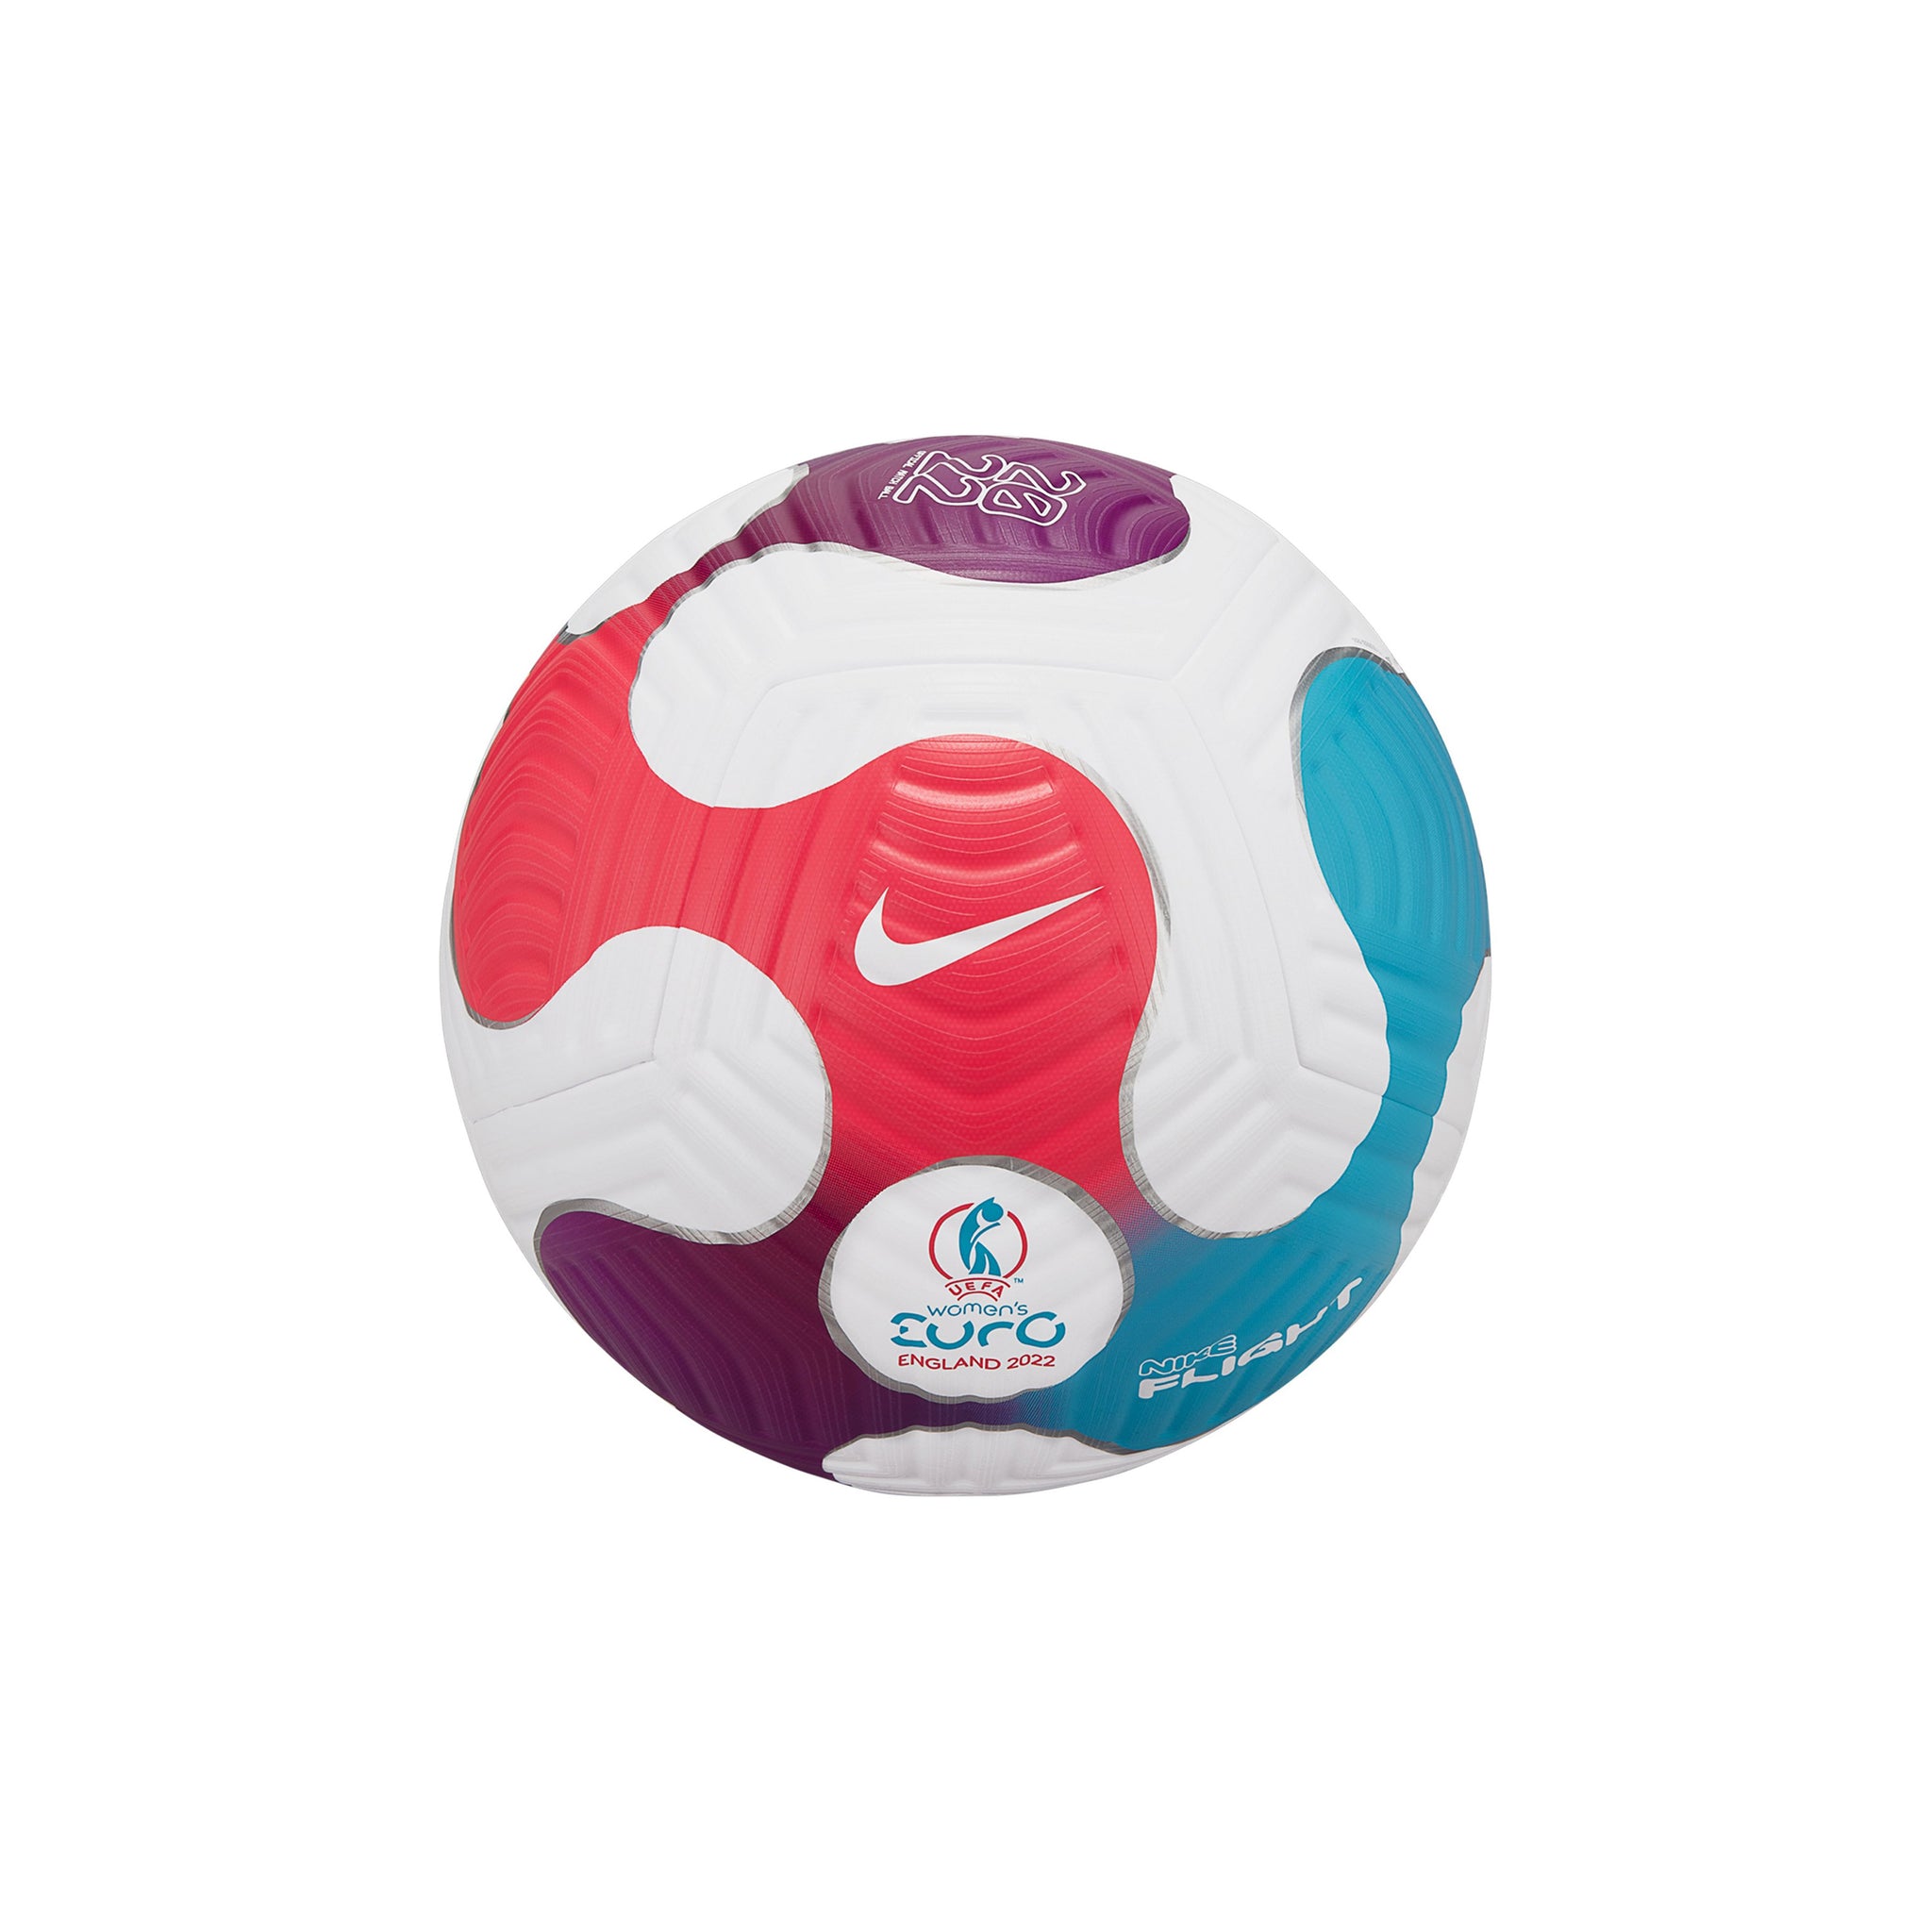 adidas 2022 World Cup AFA FMF Mexico Rihla Club Mini Soccer Ball